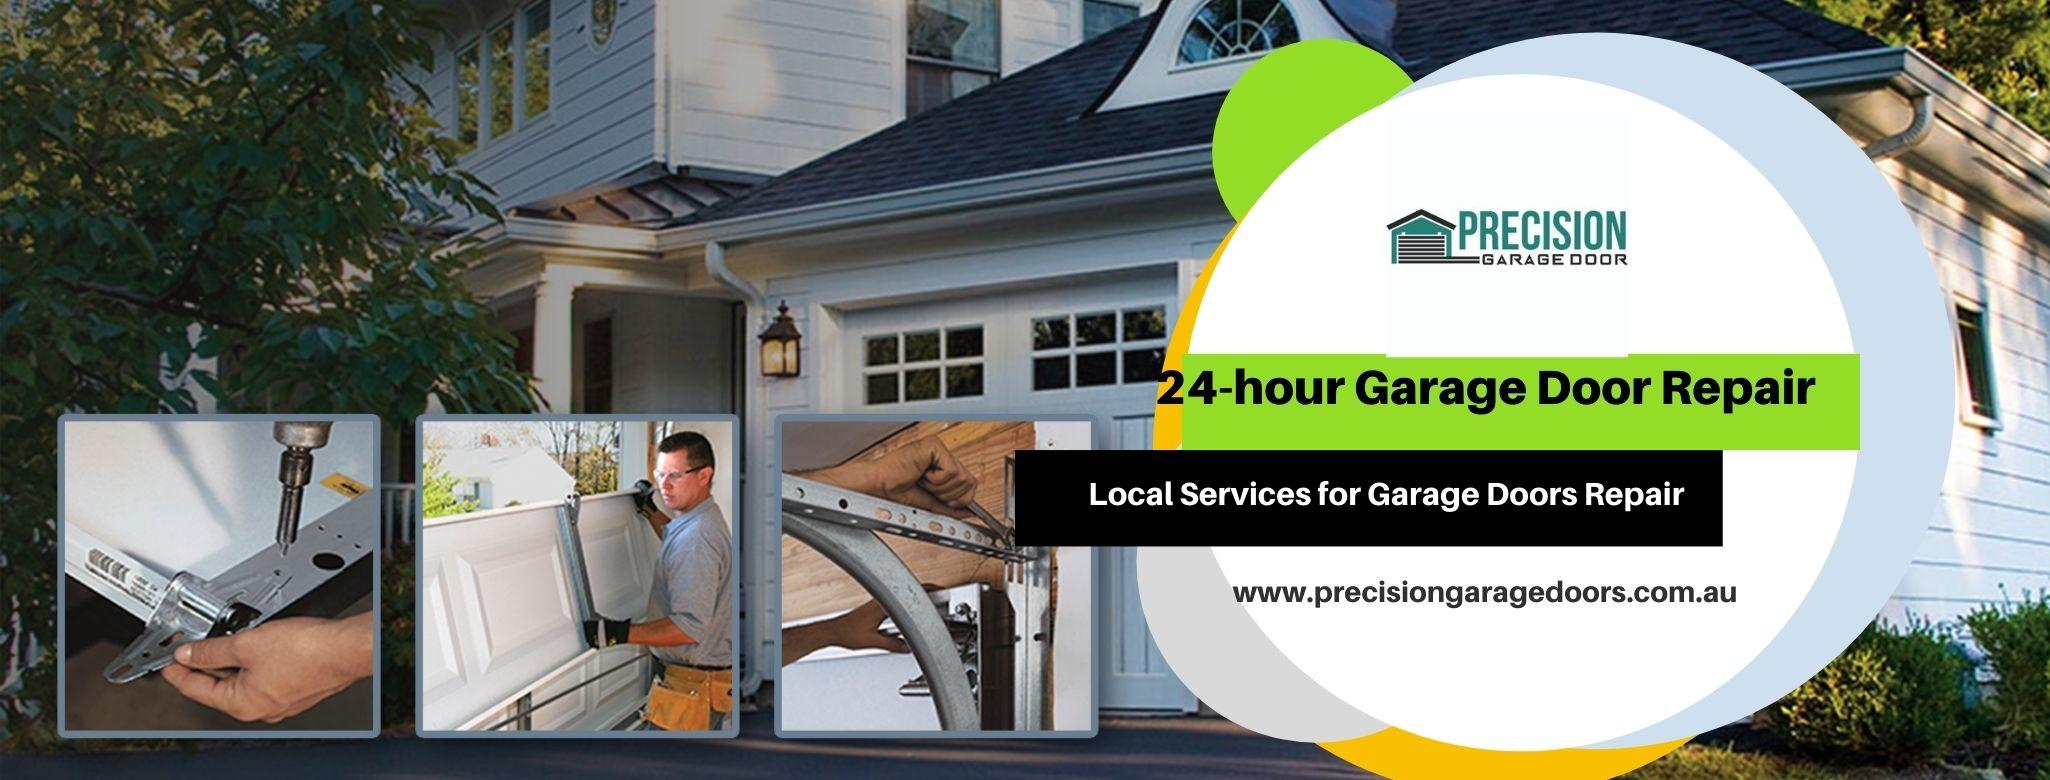 24-hour garage door repair